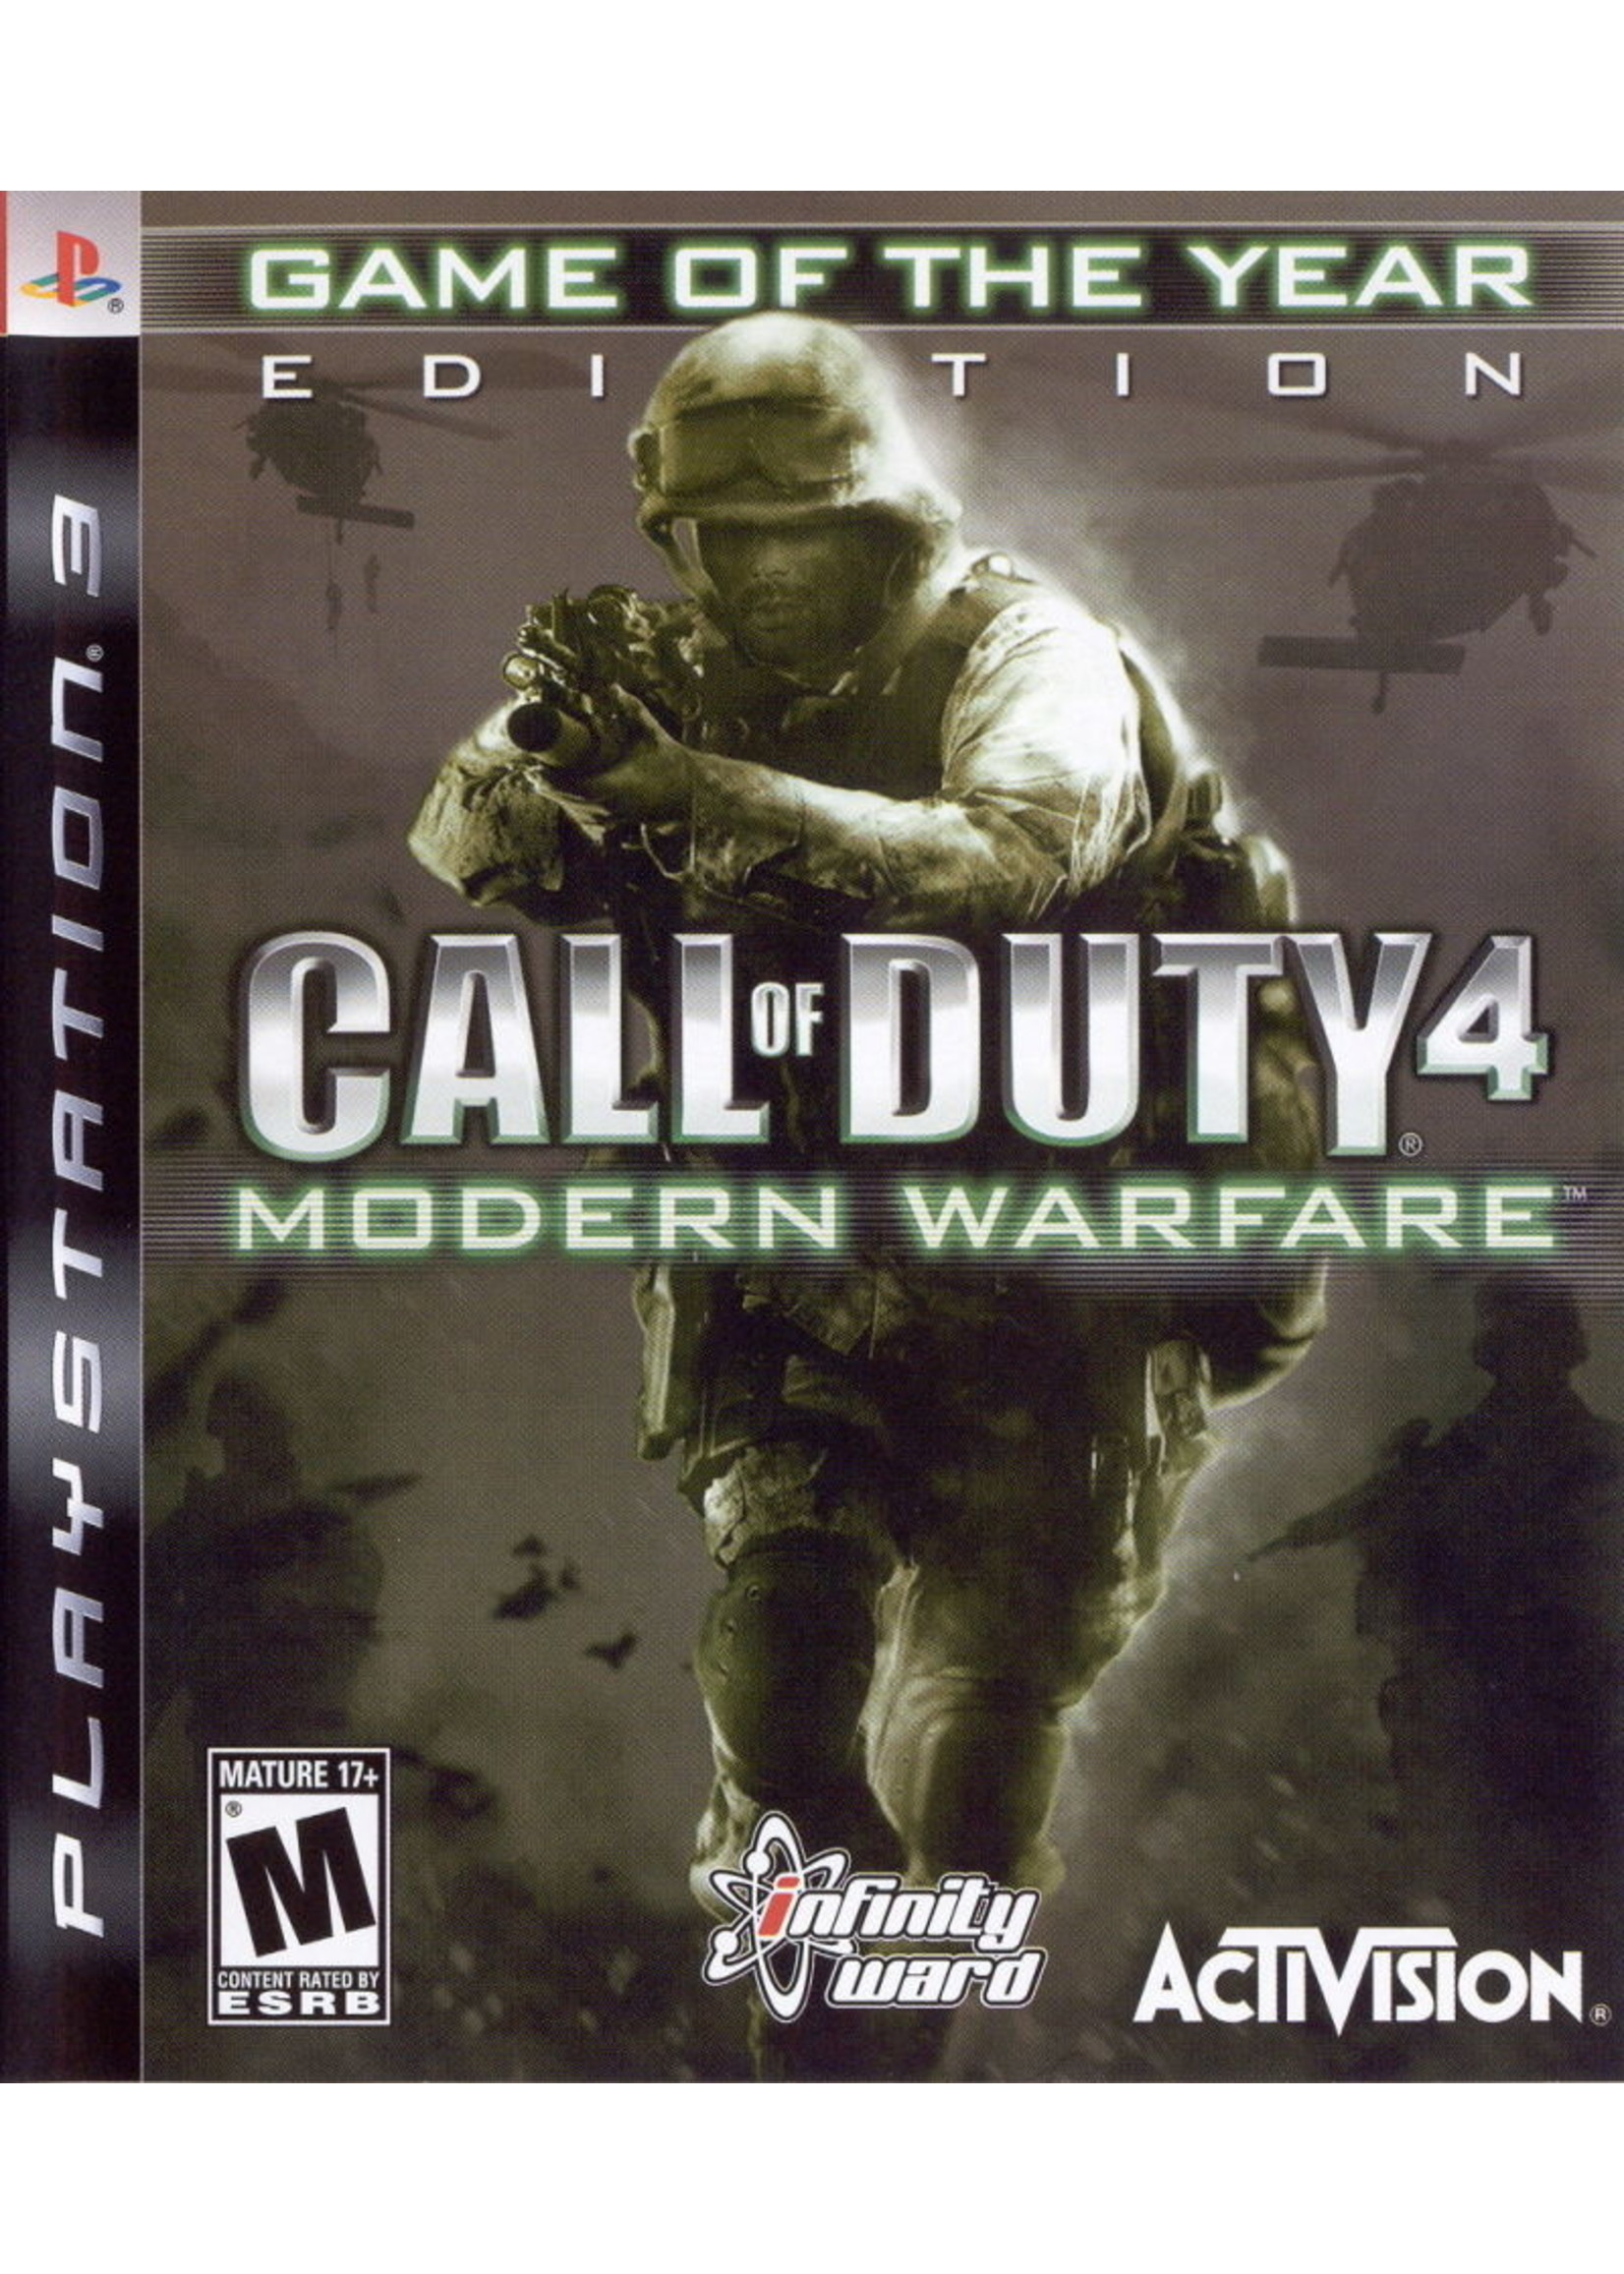 Sony Playstation 3 (PS3) Call of Duty 4 Modern Warfare GOTY